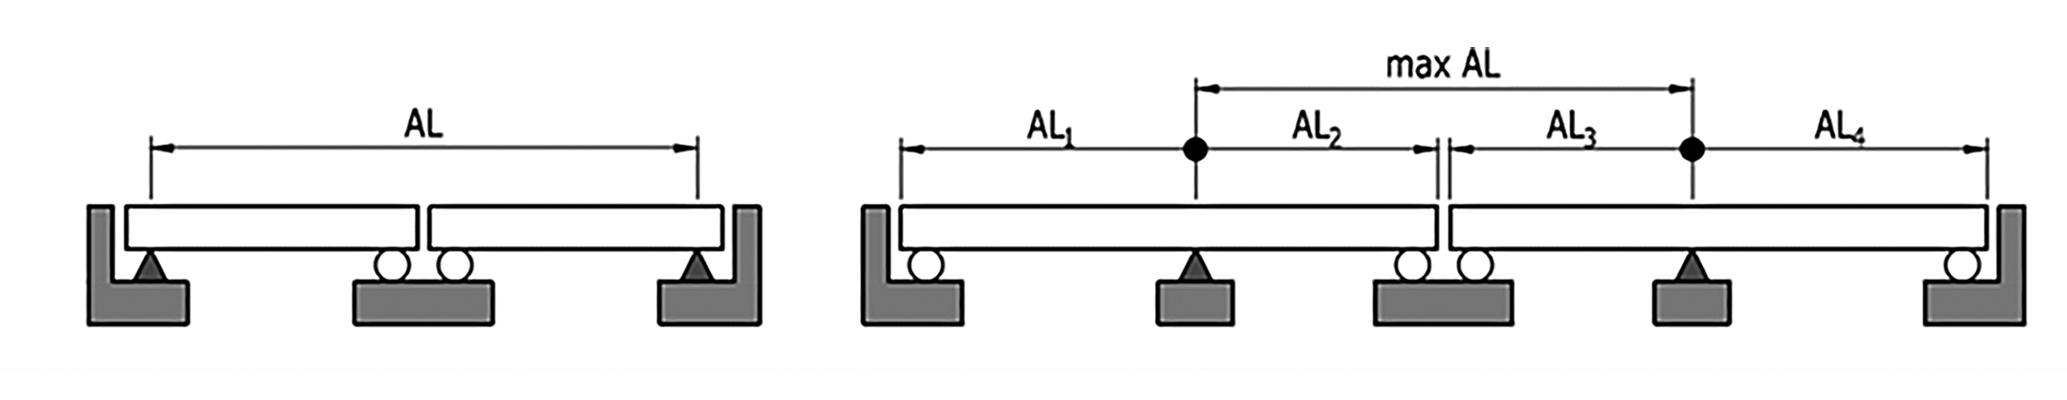 Obr. 7 – Dilatační systémy mostů s více dilatačními celky